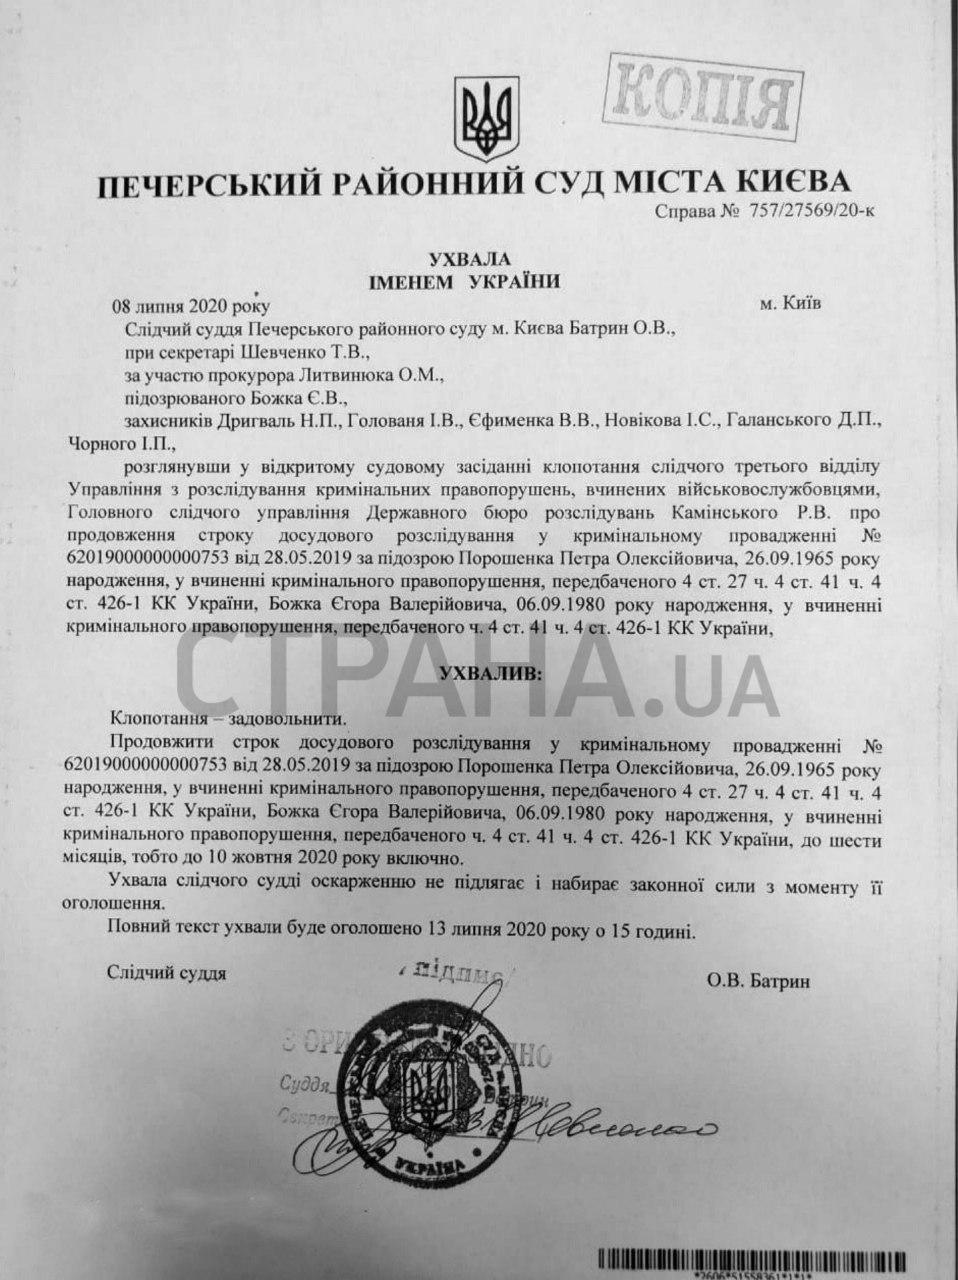 Следствие по делу Порошенко продлено до 10 октября